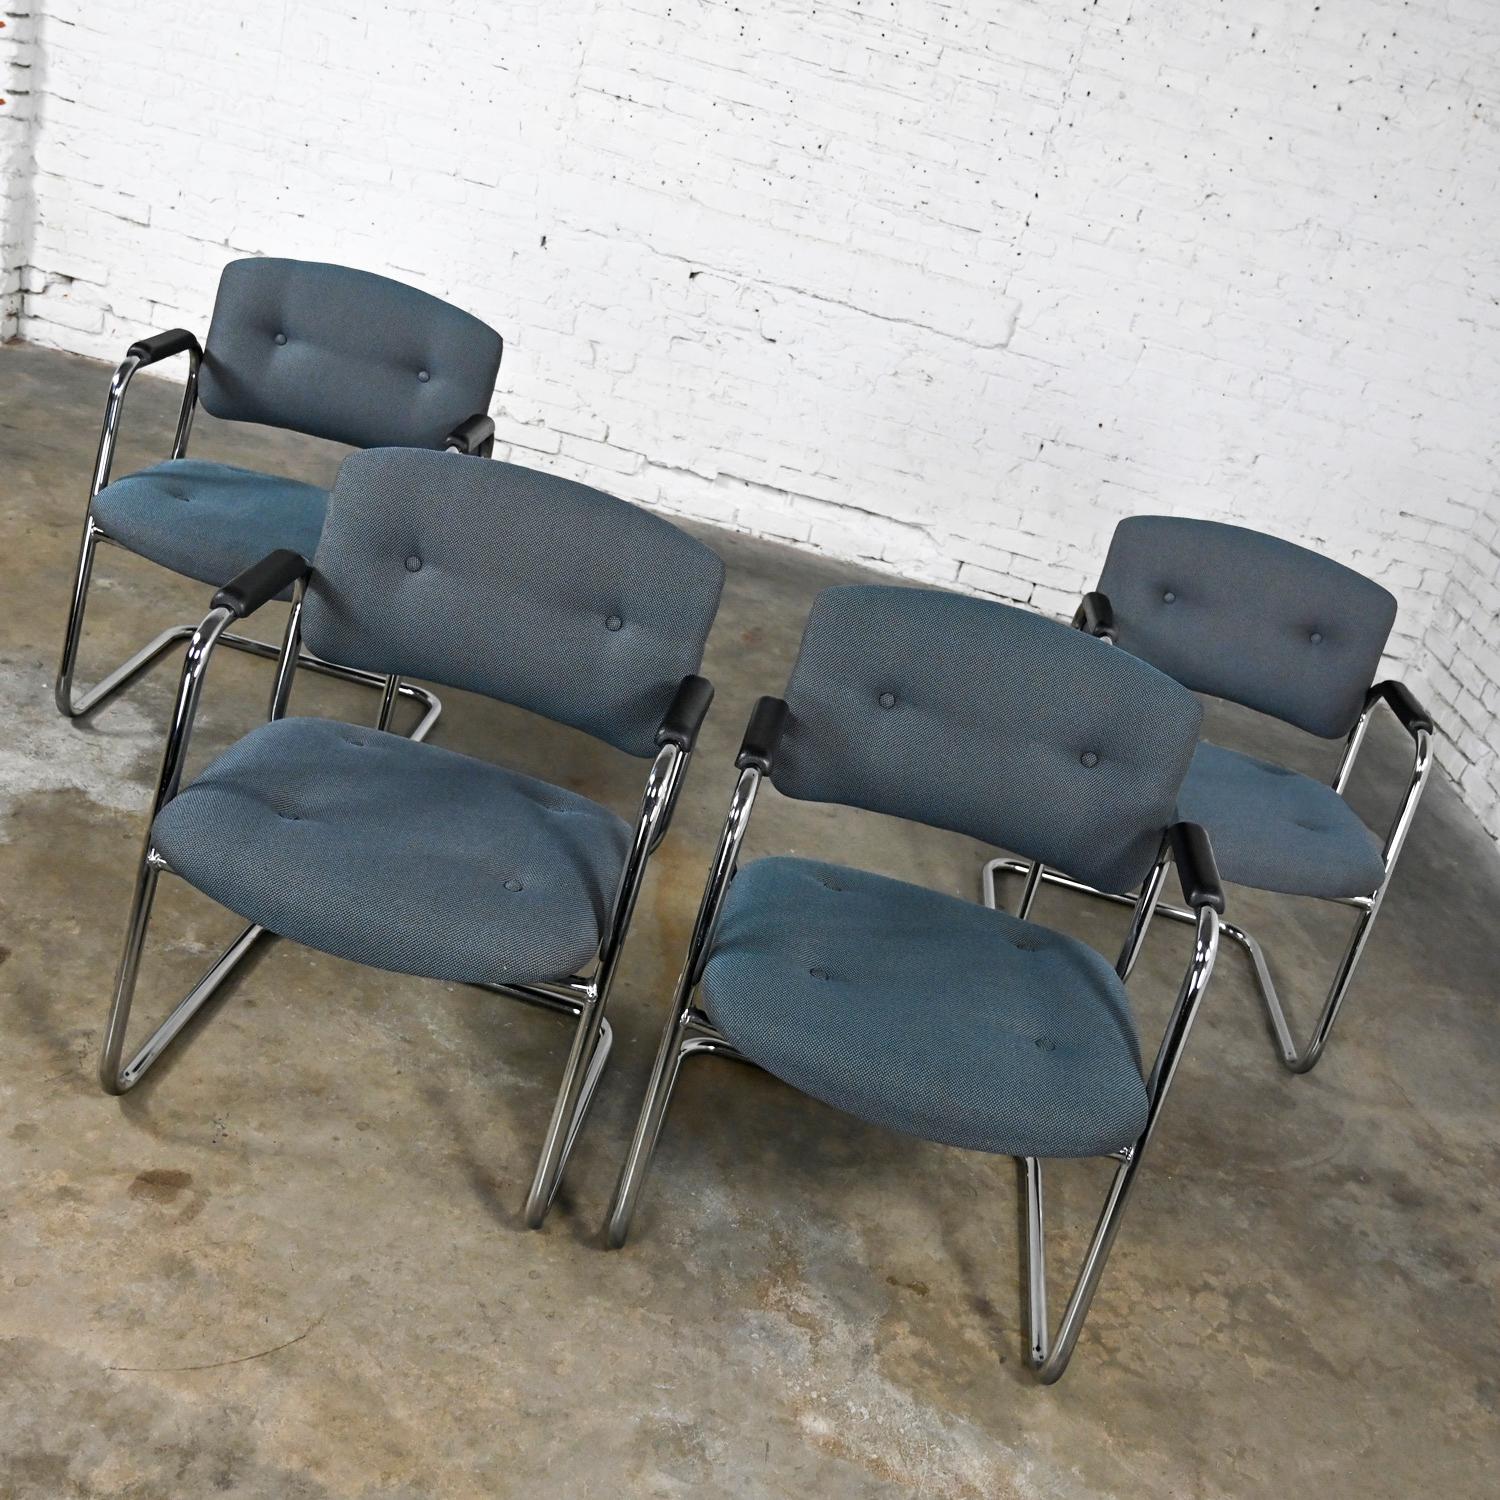 Superbes chaises cantilever vintage grises et chromées de United Chair Company dans le style de Steelcase, ensemble de 4. Composées d'un piétement luge chromé, d'accoudoirs en plastique noir et de leur tissu tweed gris d'origine avec des détails de